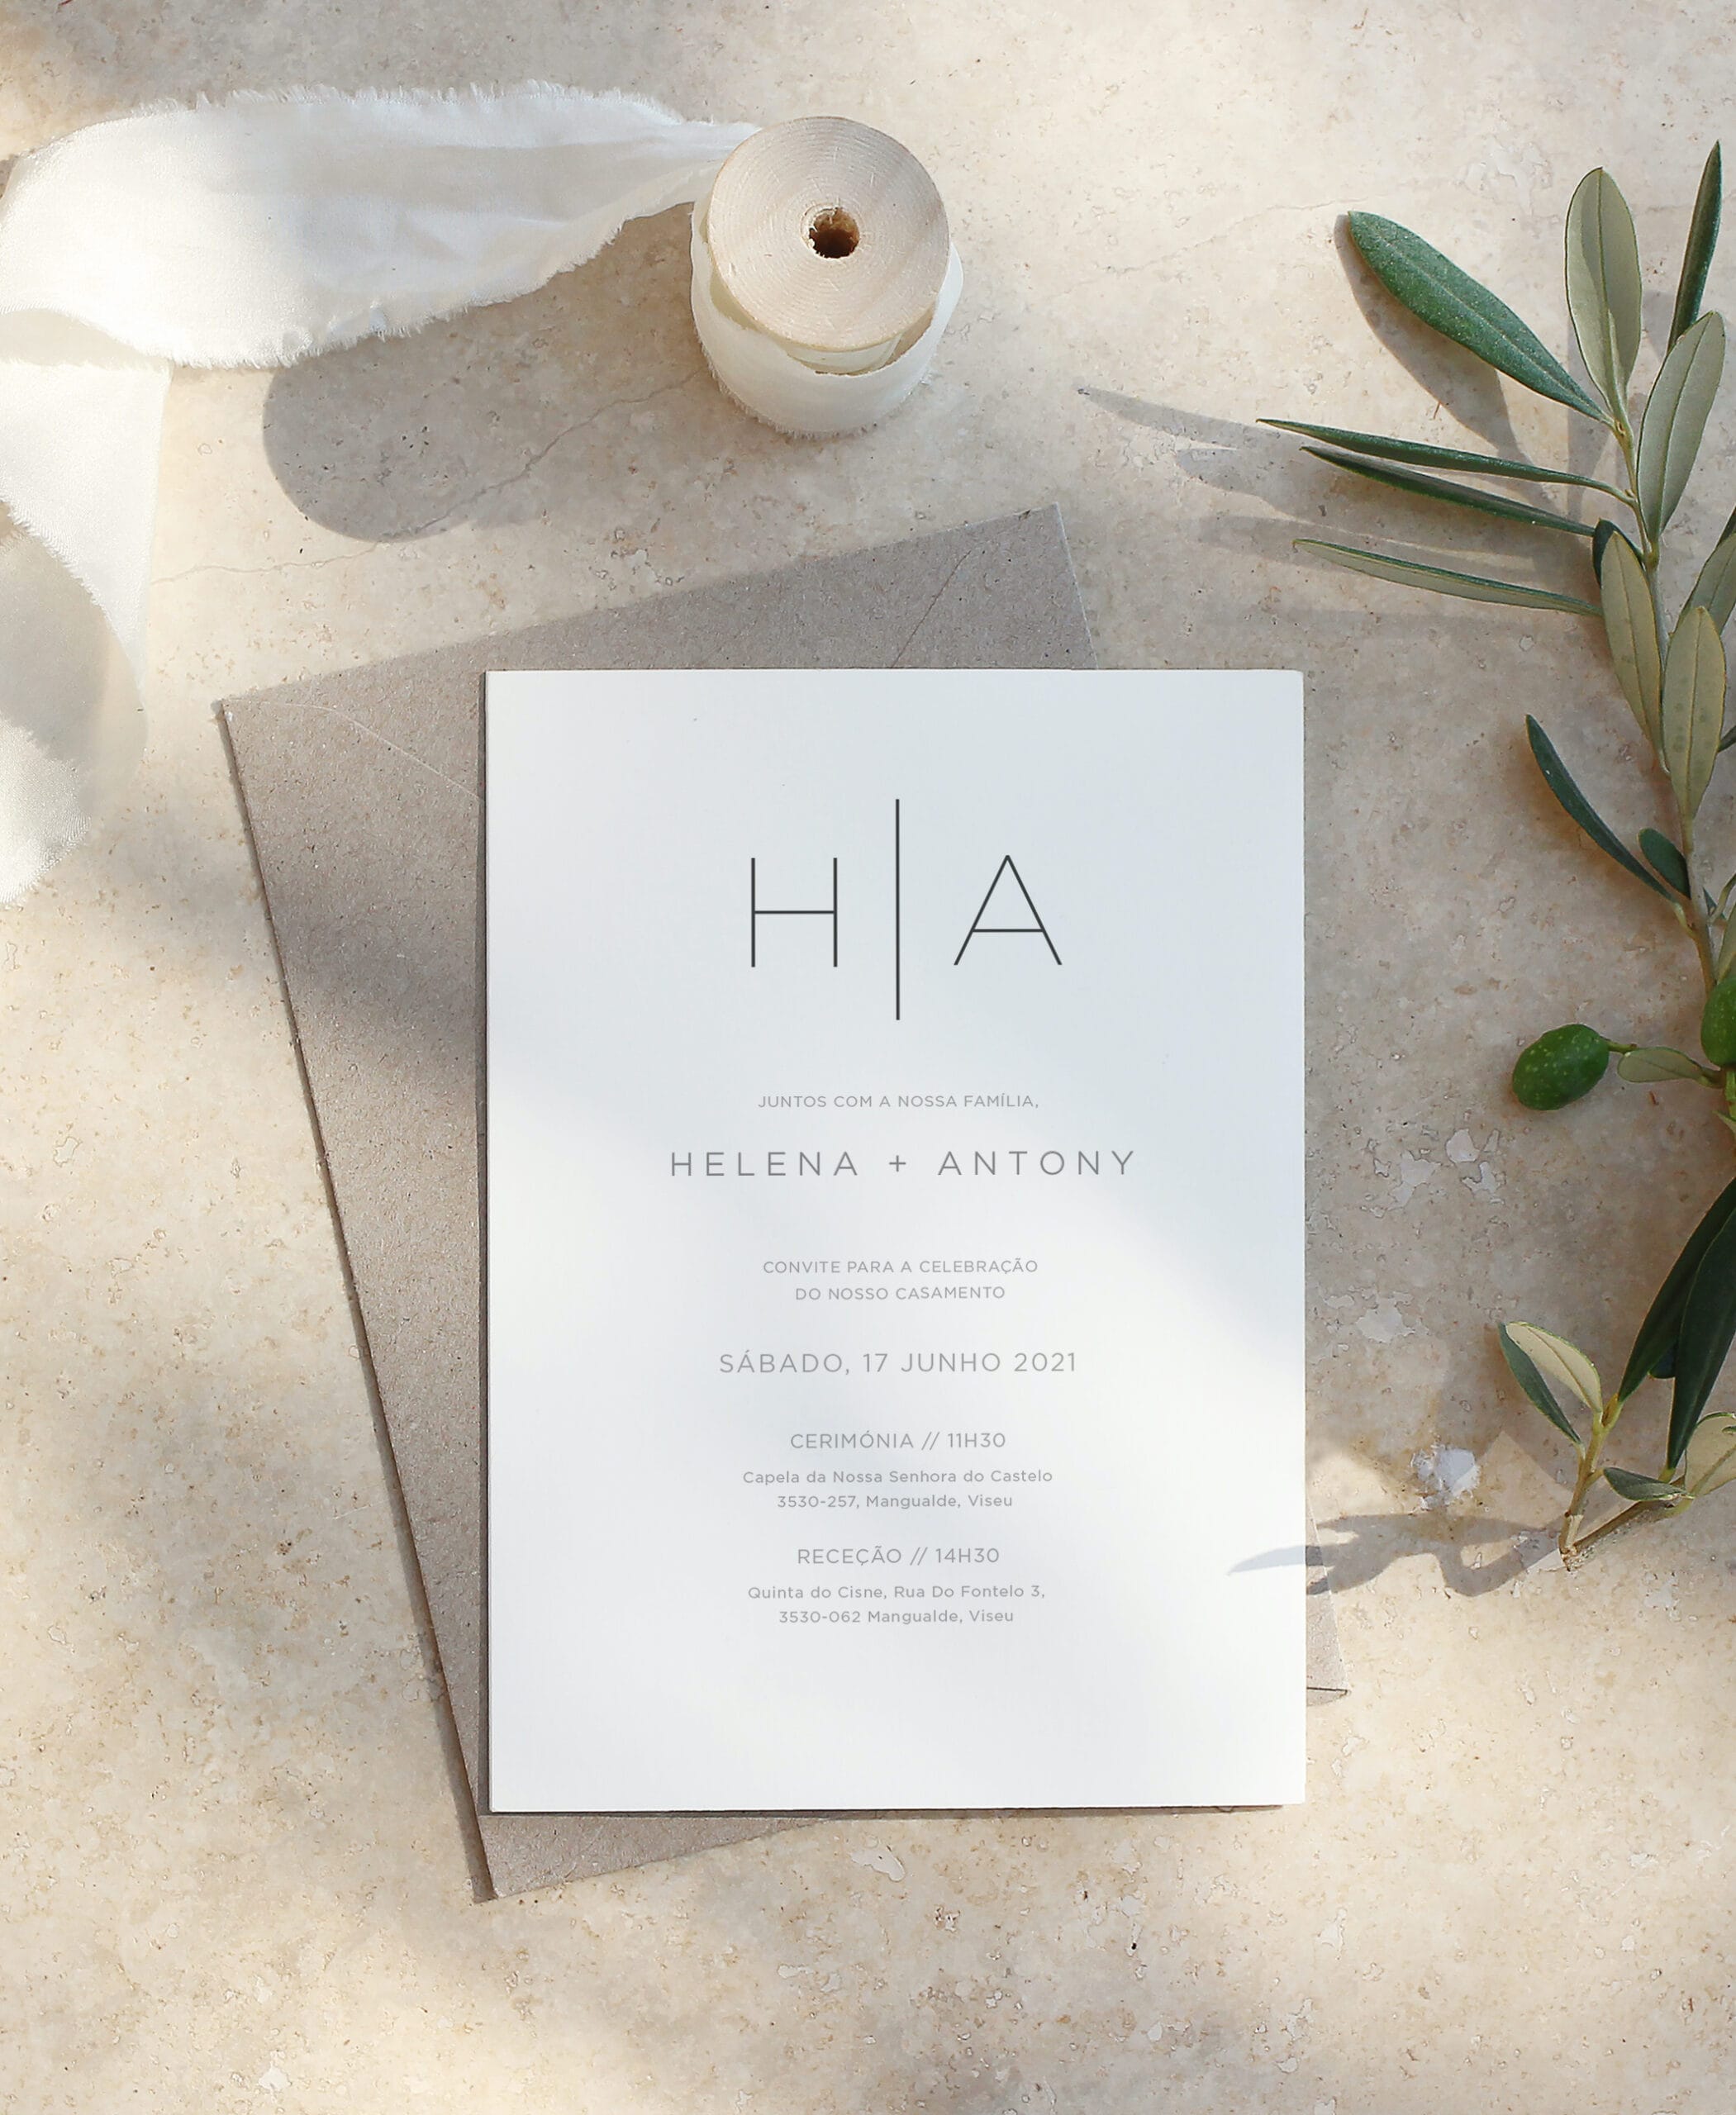 Convite de casamento de estilo tipográfico branco com um envelope castanho com uma fita de linho e folhas de oliveira